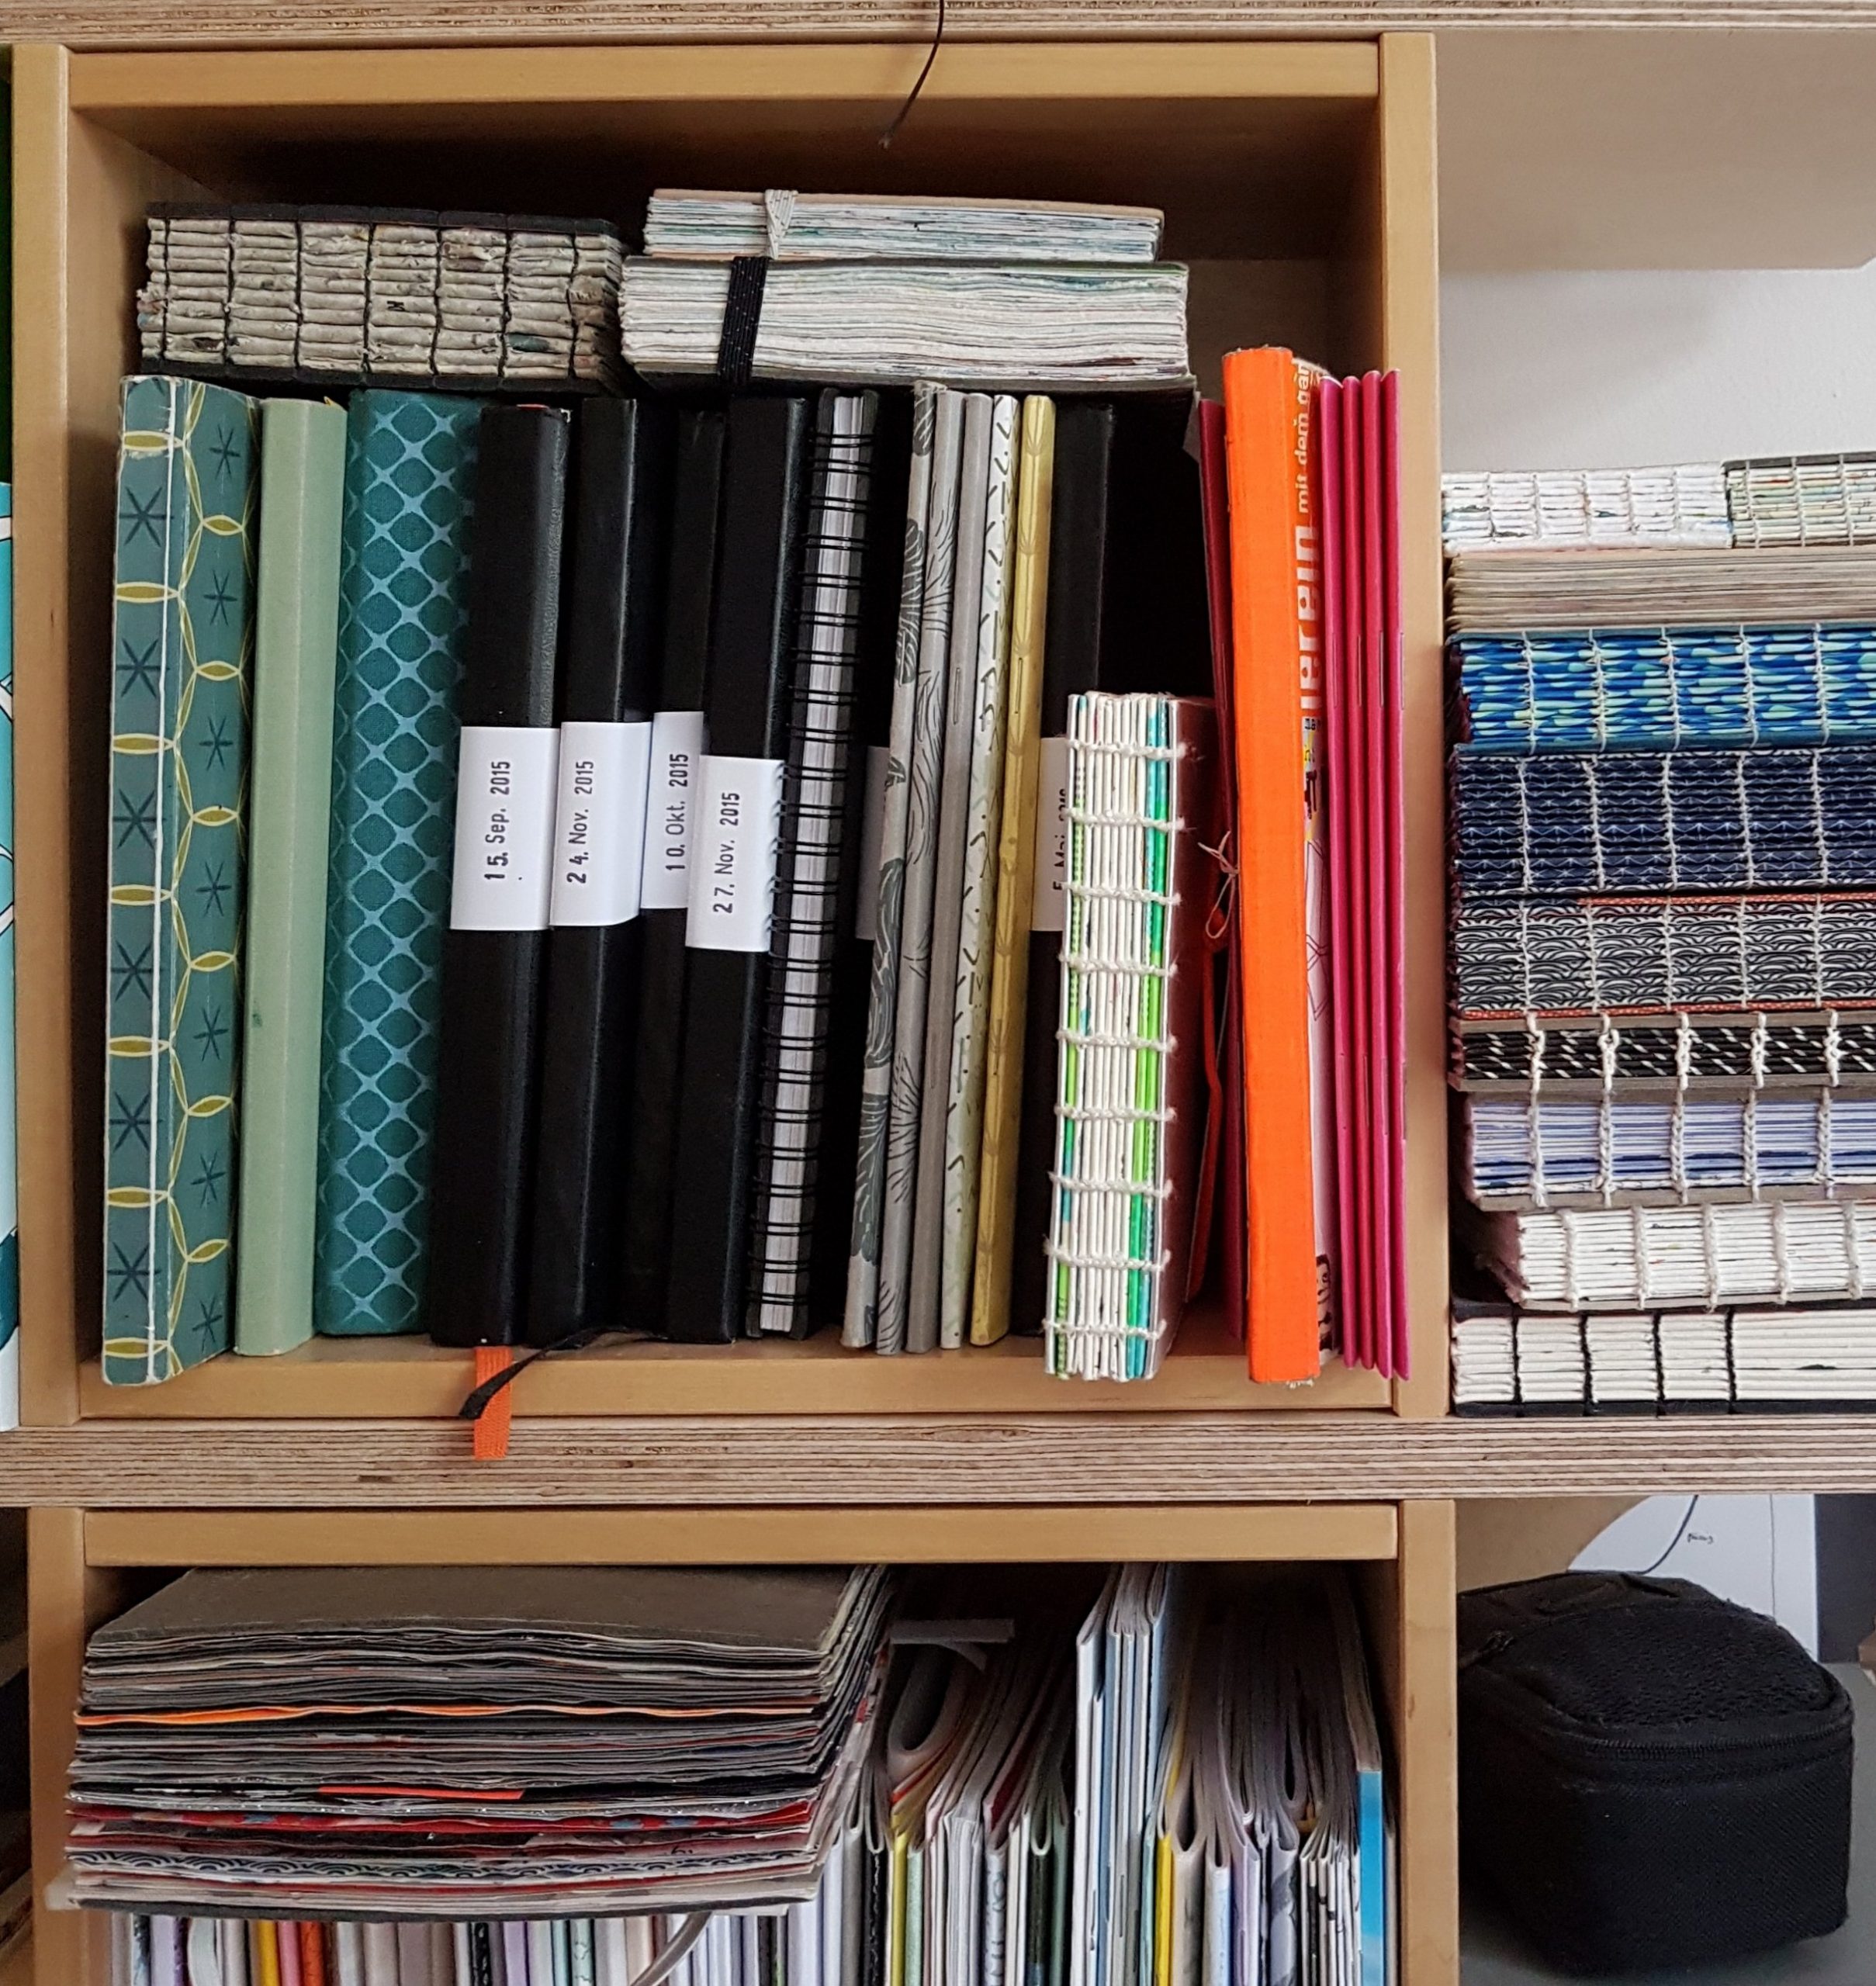 Foto: Bücherregal vollgestoppft mit Skizzenbüchern